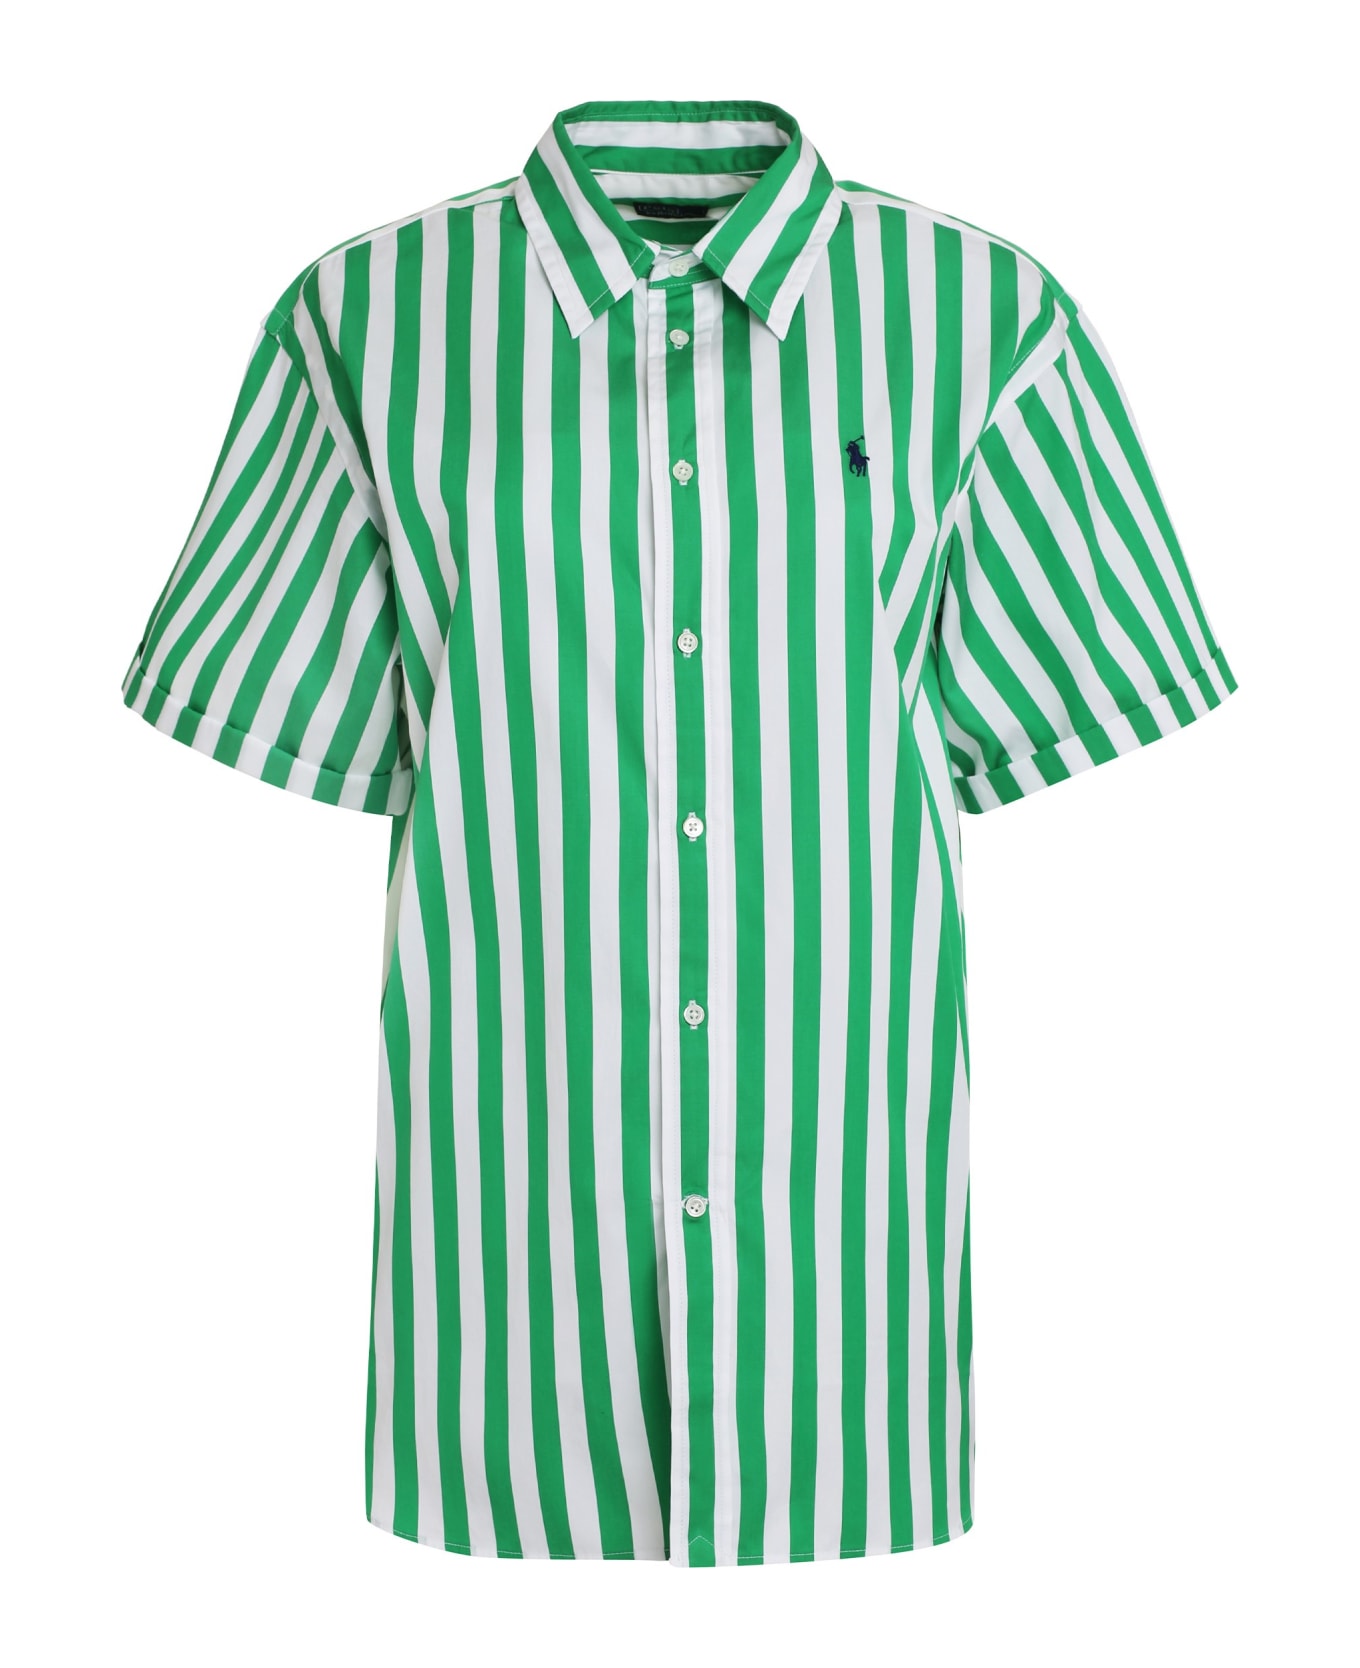 Polo Ralph Lauren Striped Cotton Shirt - green